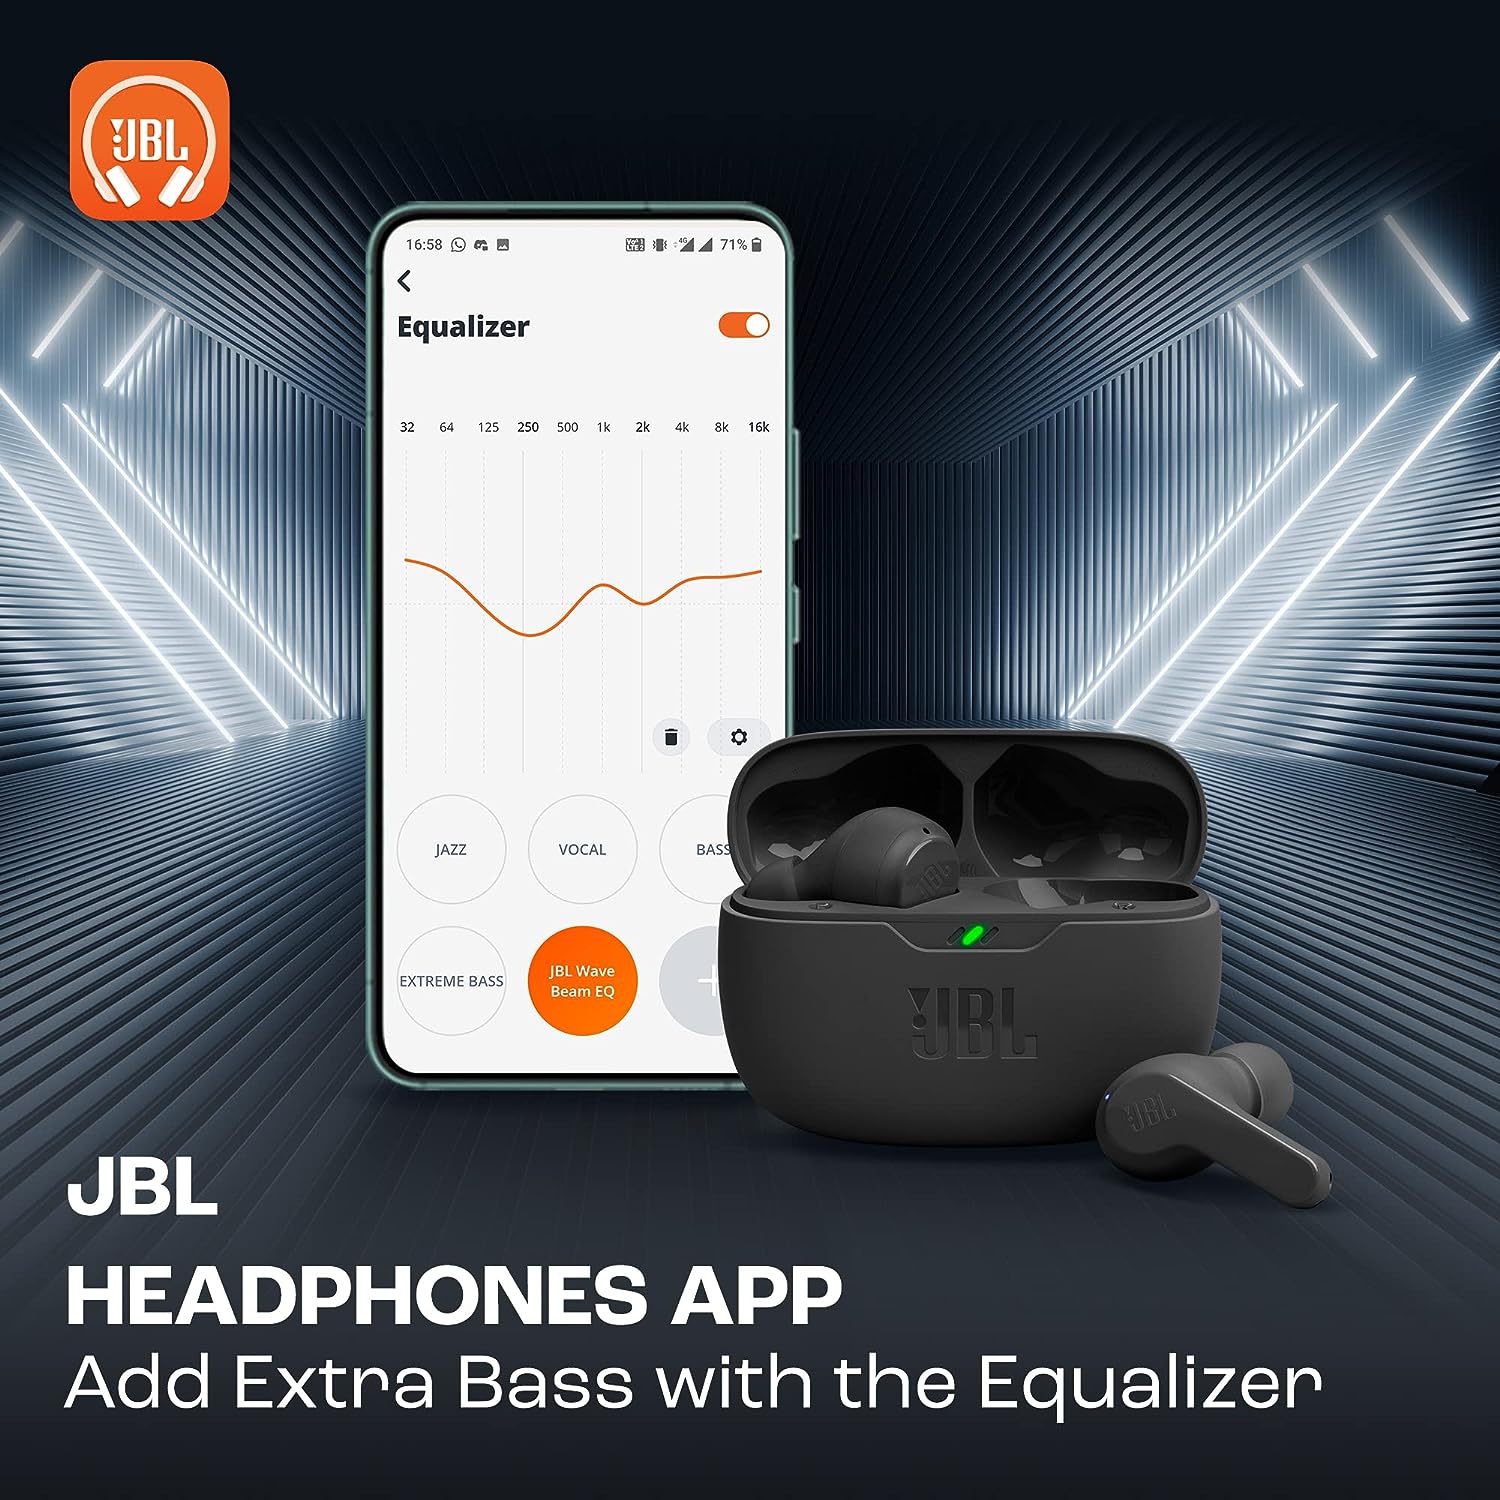 JBL Wave Beam True Wireless Earbuds - Beige